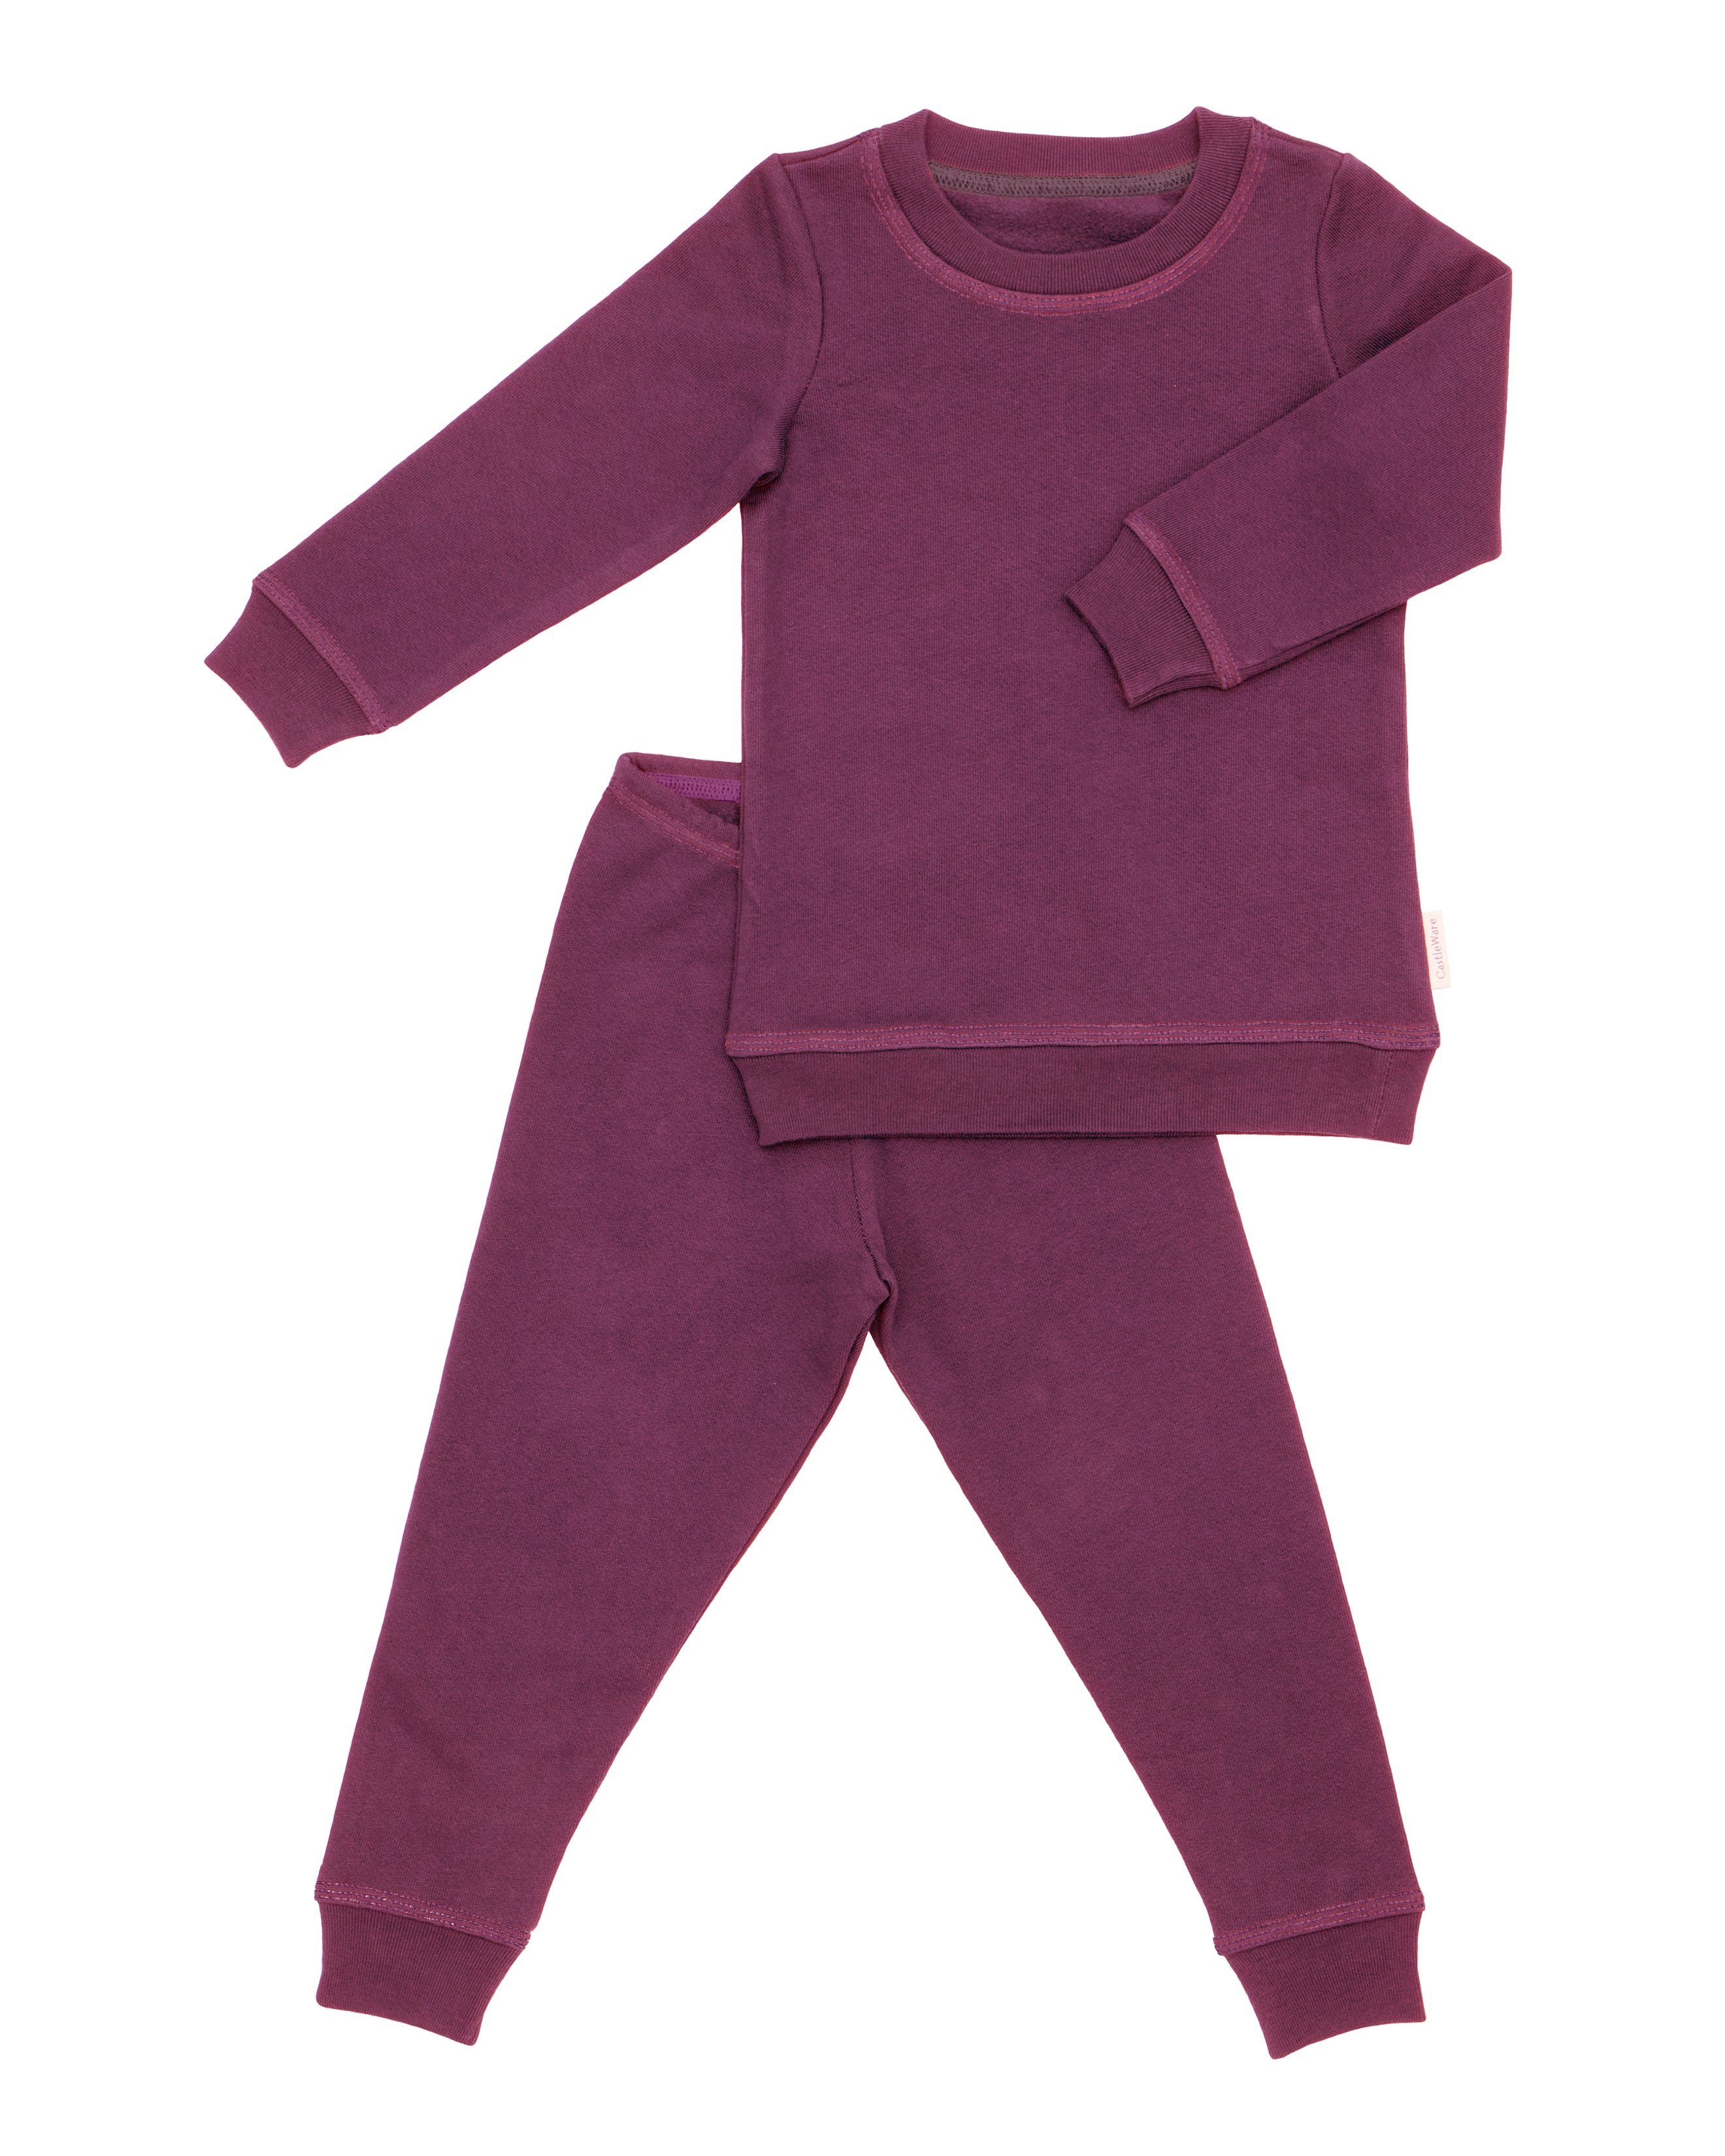 Junior Womens Pink & Blue 3 Piece Fleece Pajamas Sleep Set with